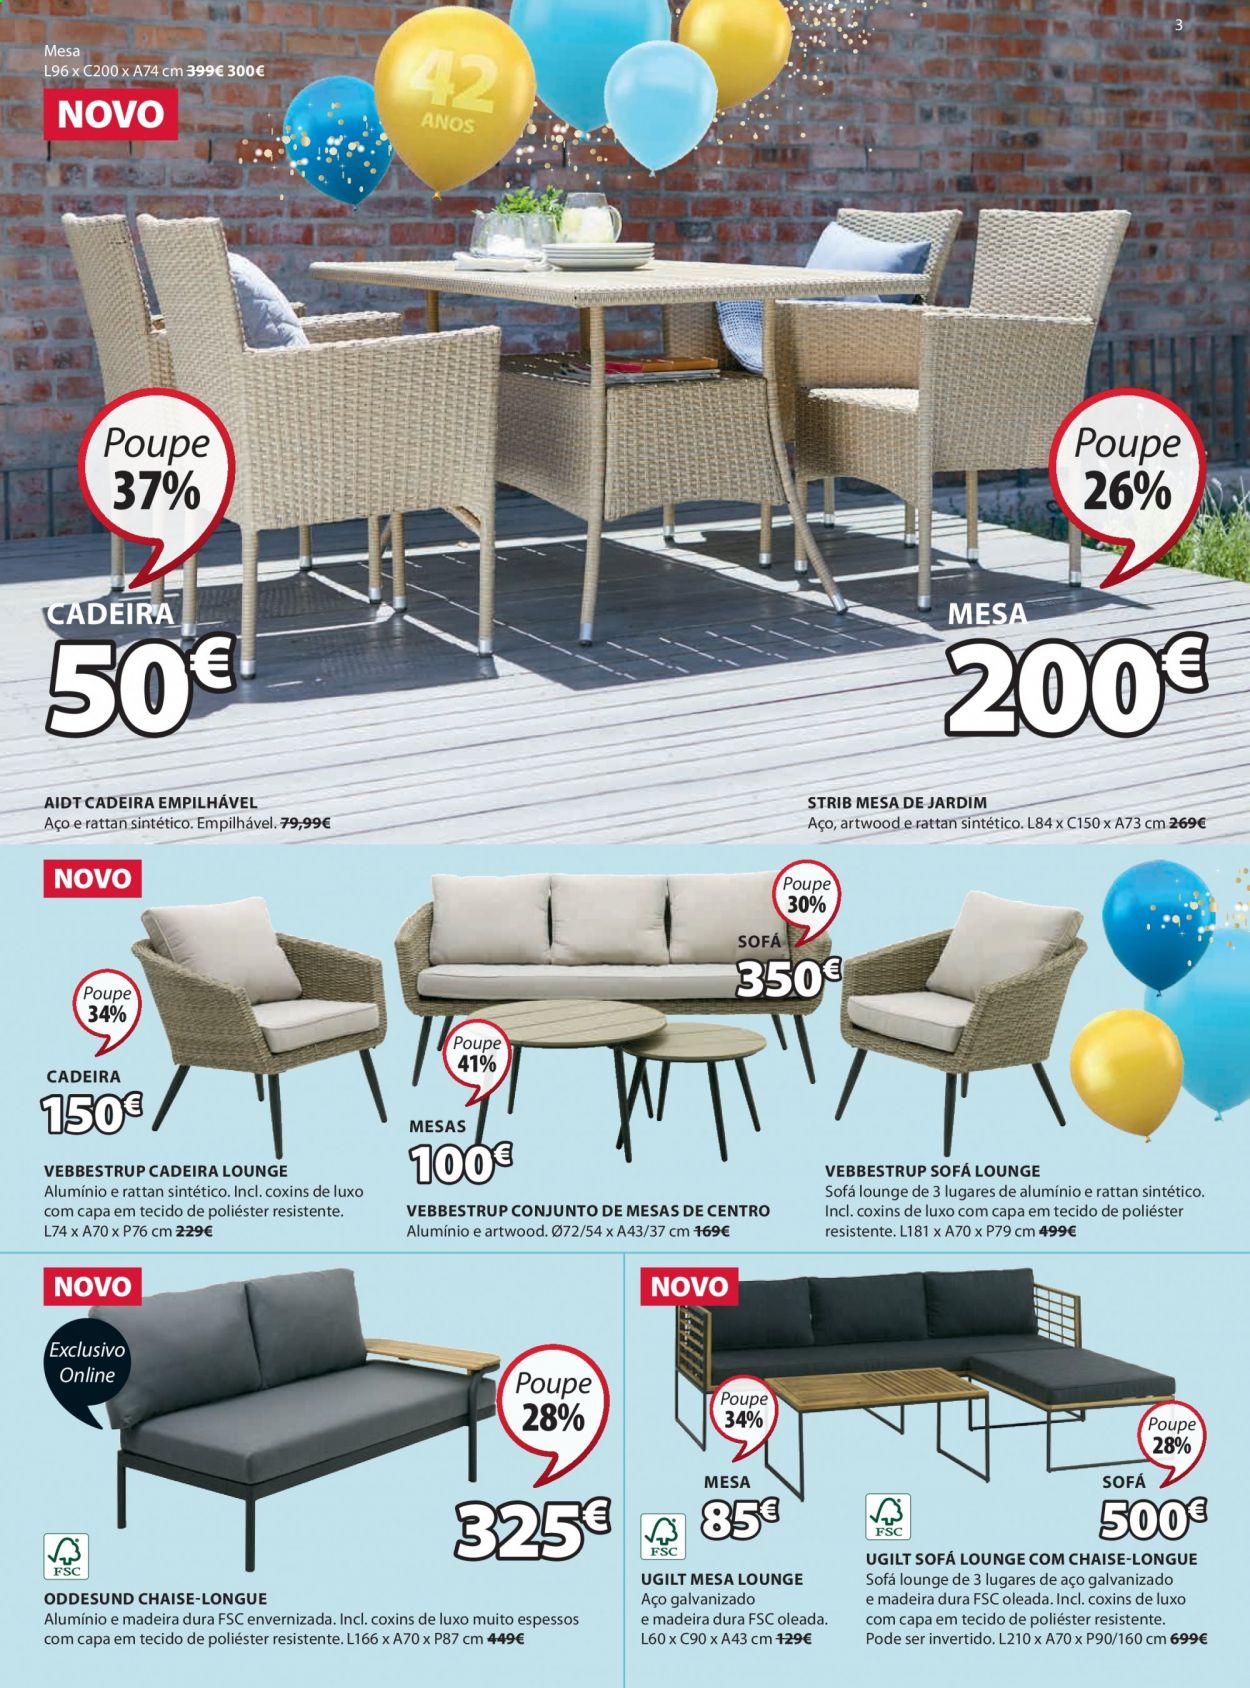 thumbnail - Folheto Jysk - 8.4.2021 - 21.4.2021 - Produtos em promoção - cadeira, chaise-longue, sofá. Página 3.